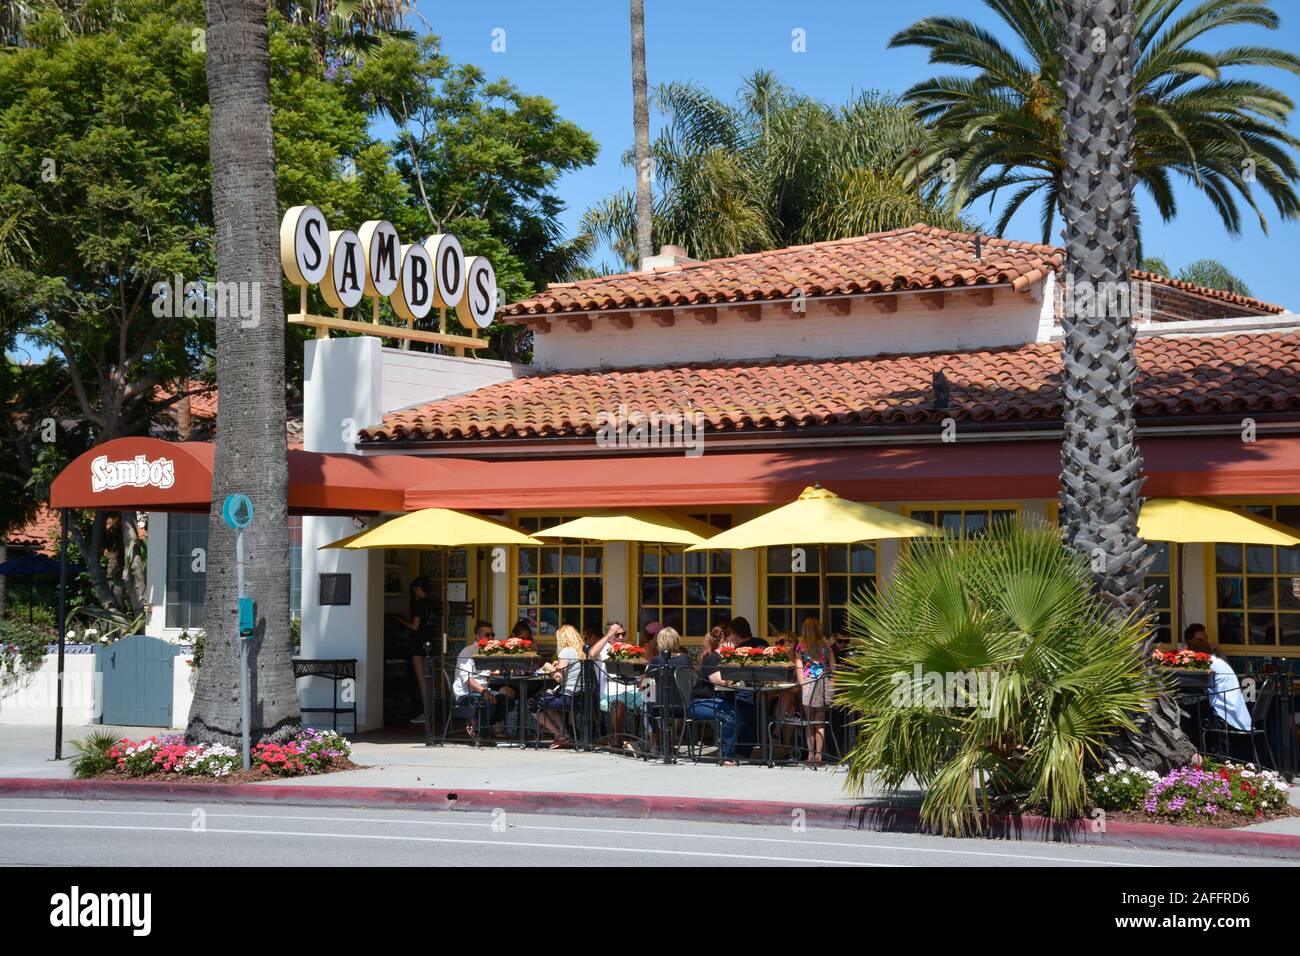 Personas cenando en el restaurante patio de zambos, el último de los Zambos cadenas de restaurantes para permanecer en el negocio, ubicado en Santa Barbara, CA, EE.UU. Foto de stock